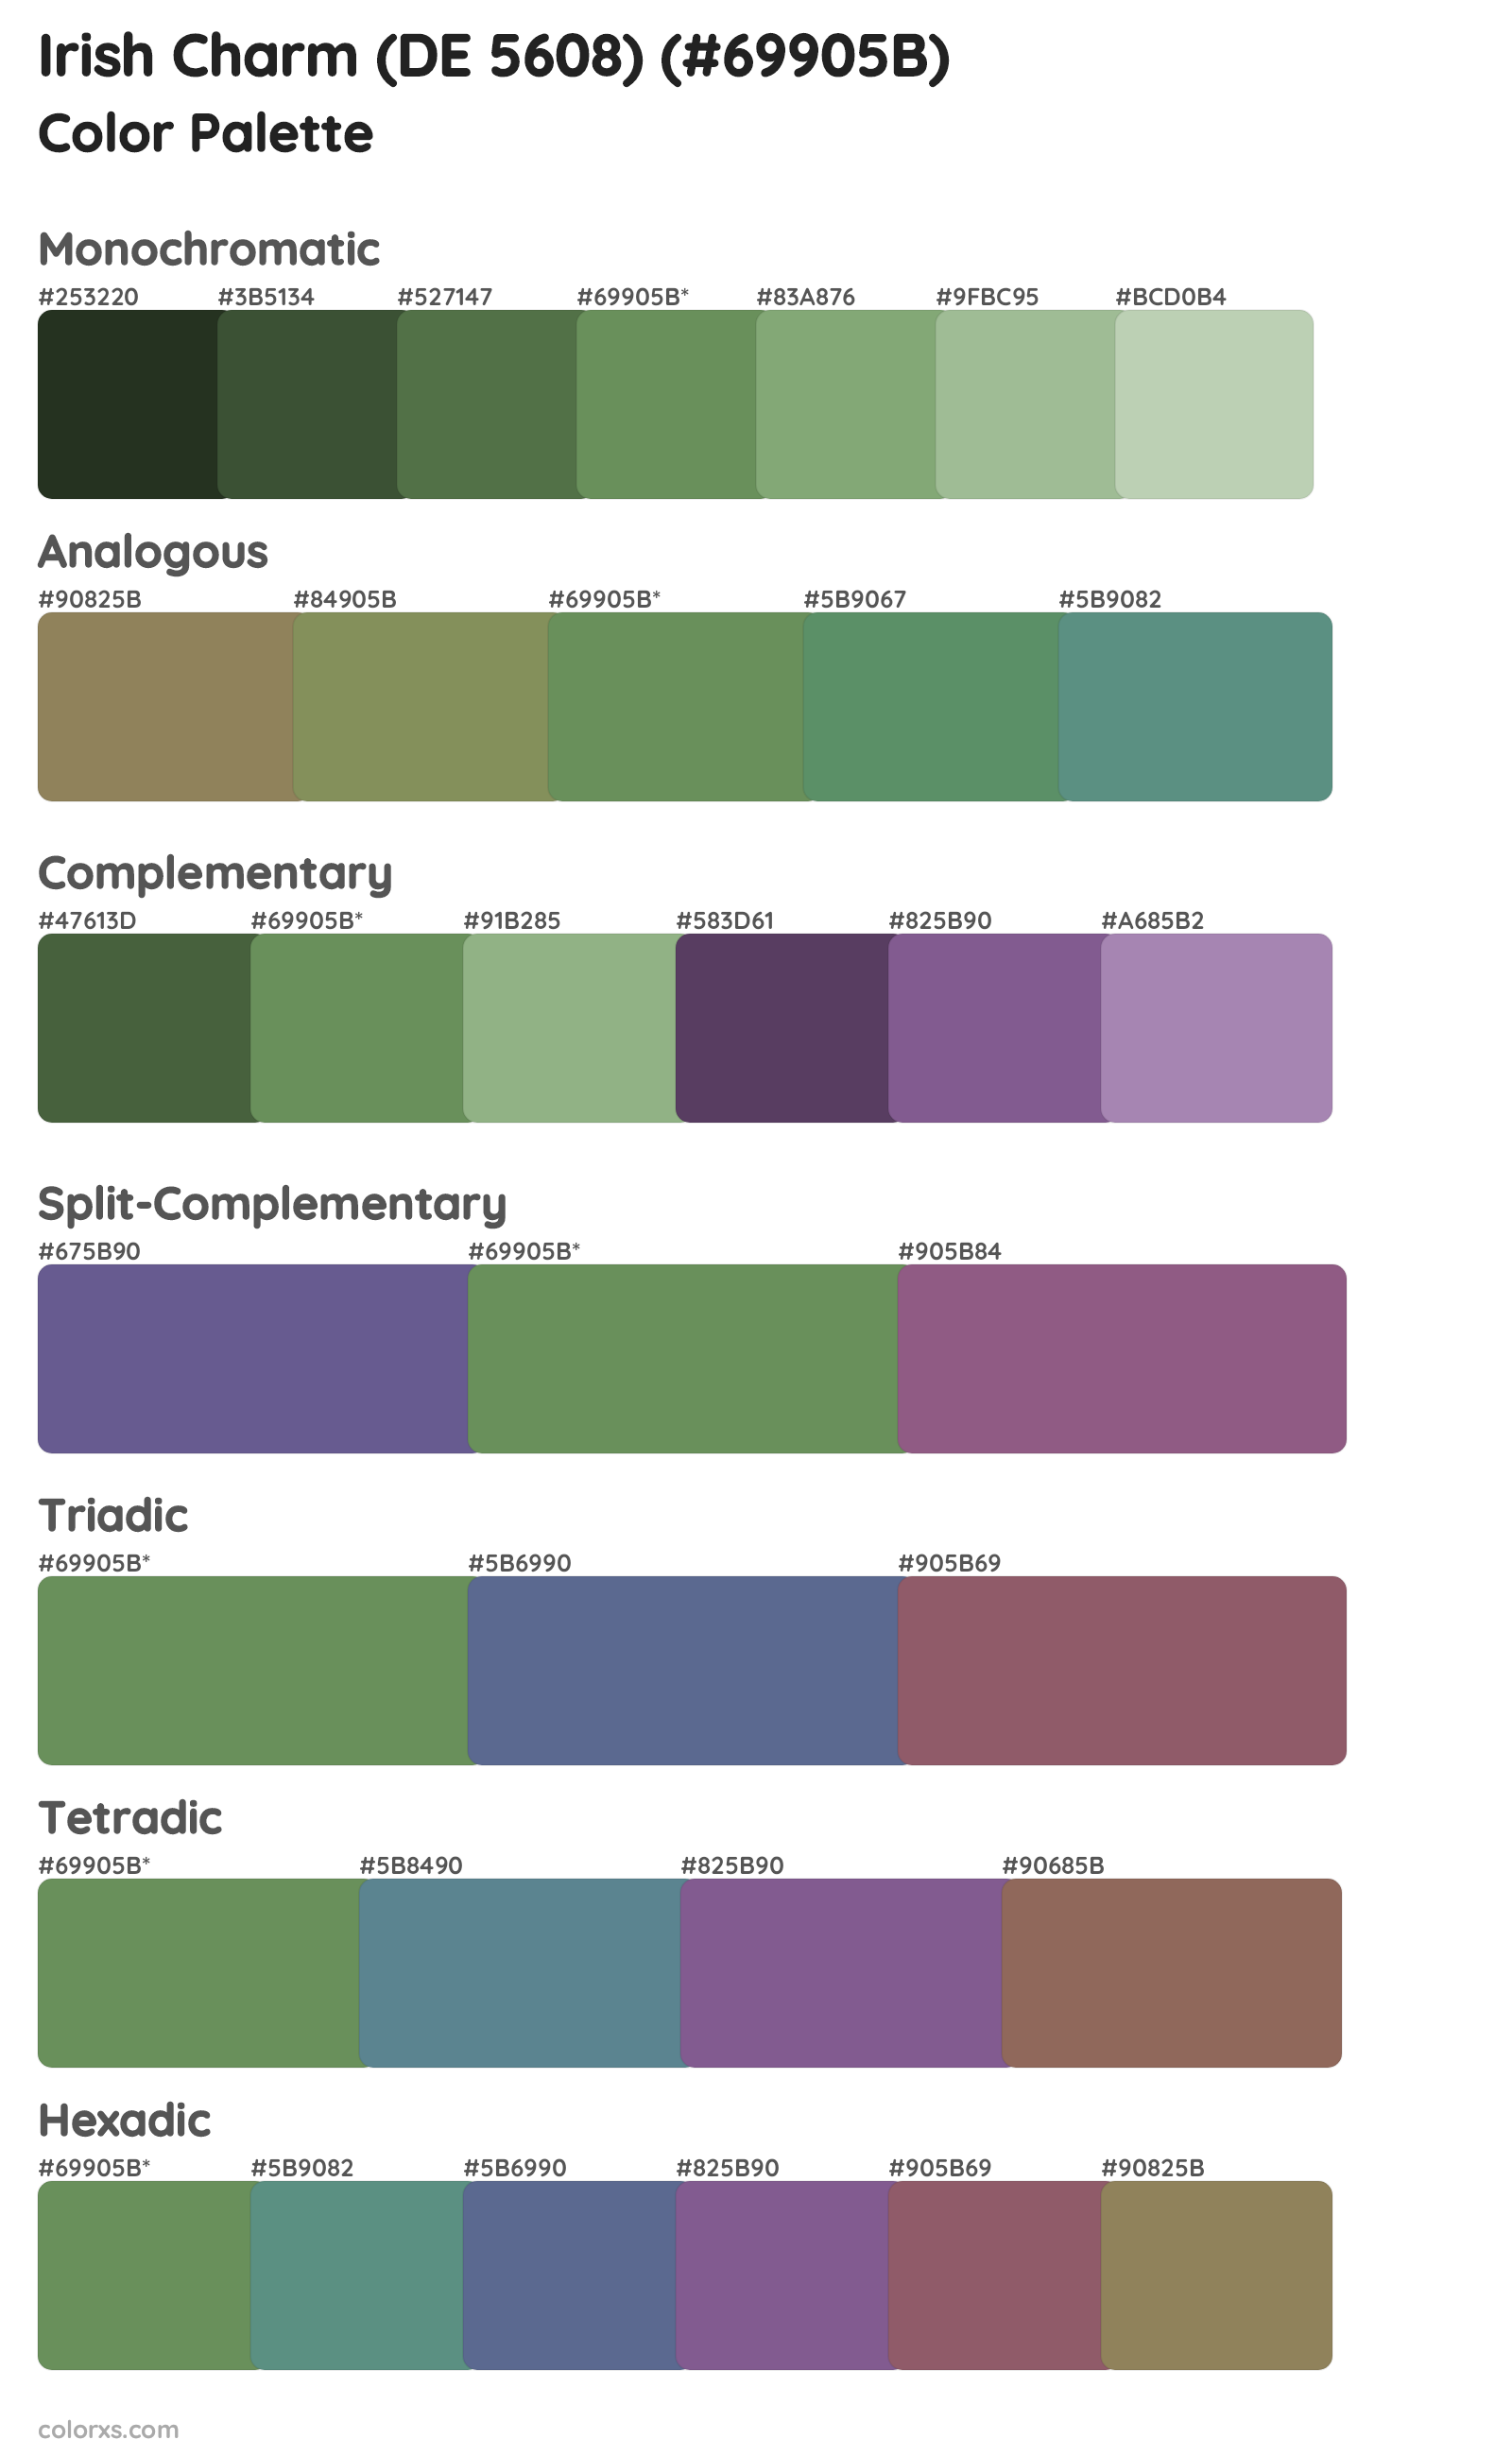 Irish Charm (DE 5608) Color Scheme Palettes